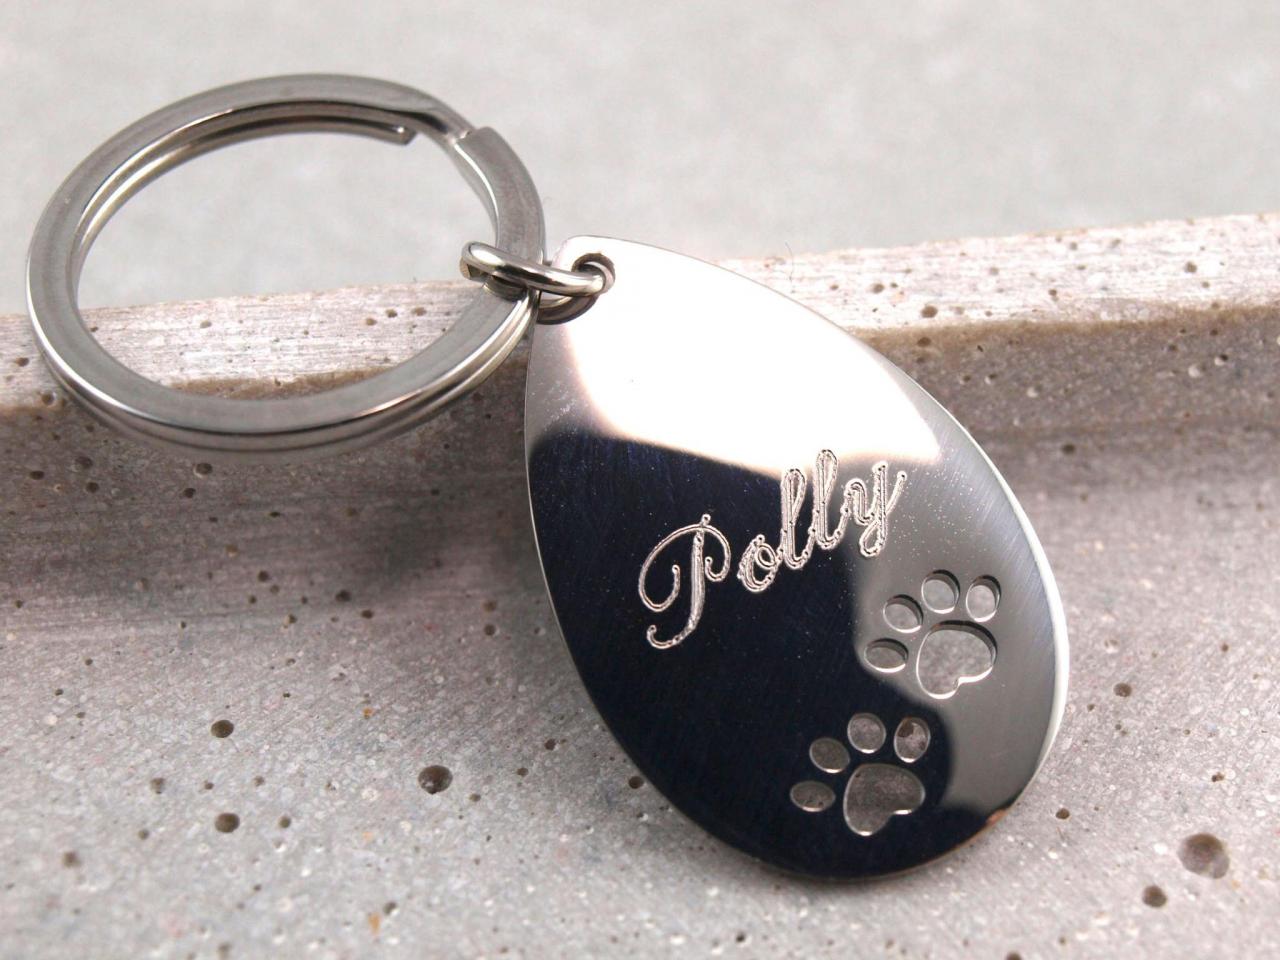 Schlüsselanhänger Polly aus Edelstahl mit ausgestanzten Hundepfoten